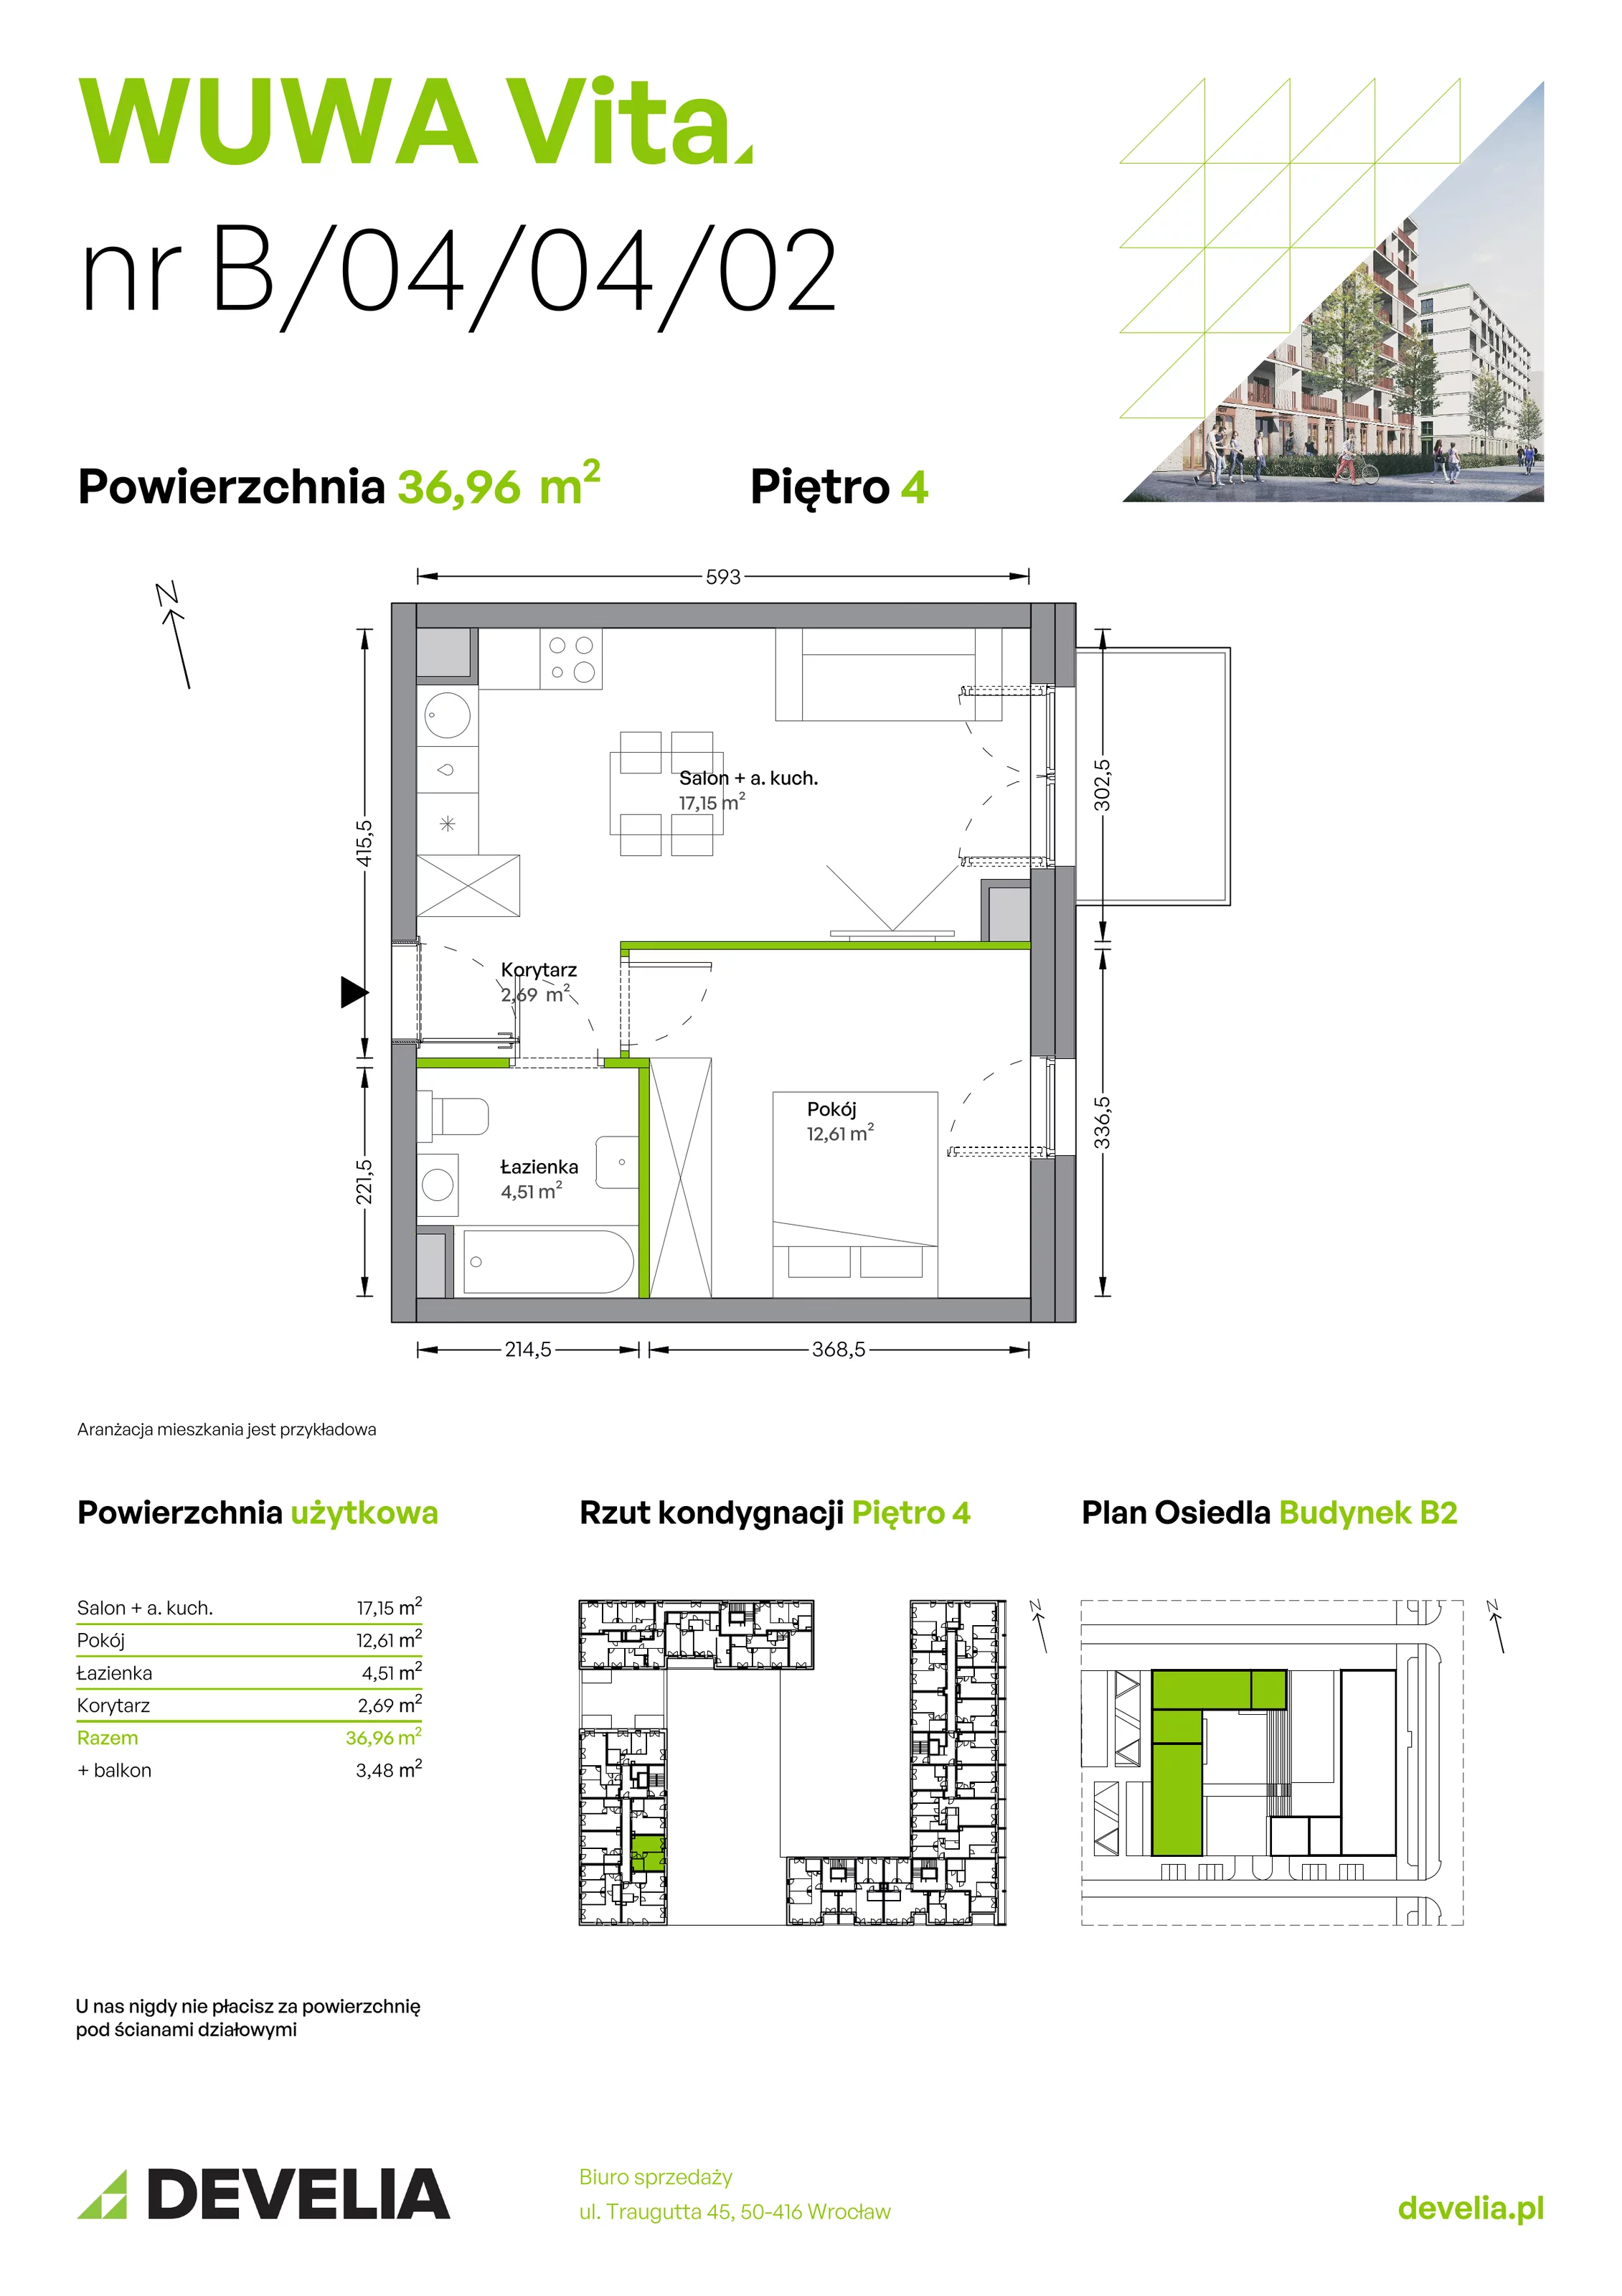 Mieszkanie 36,96 m², piętro 4, oferta nr B.04.04.02, WUWA Vita, Wrocław, Żerniki, Fabryczna, ul. Tadeusza Brzozy